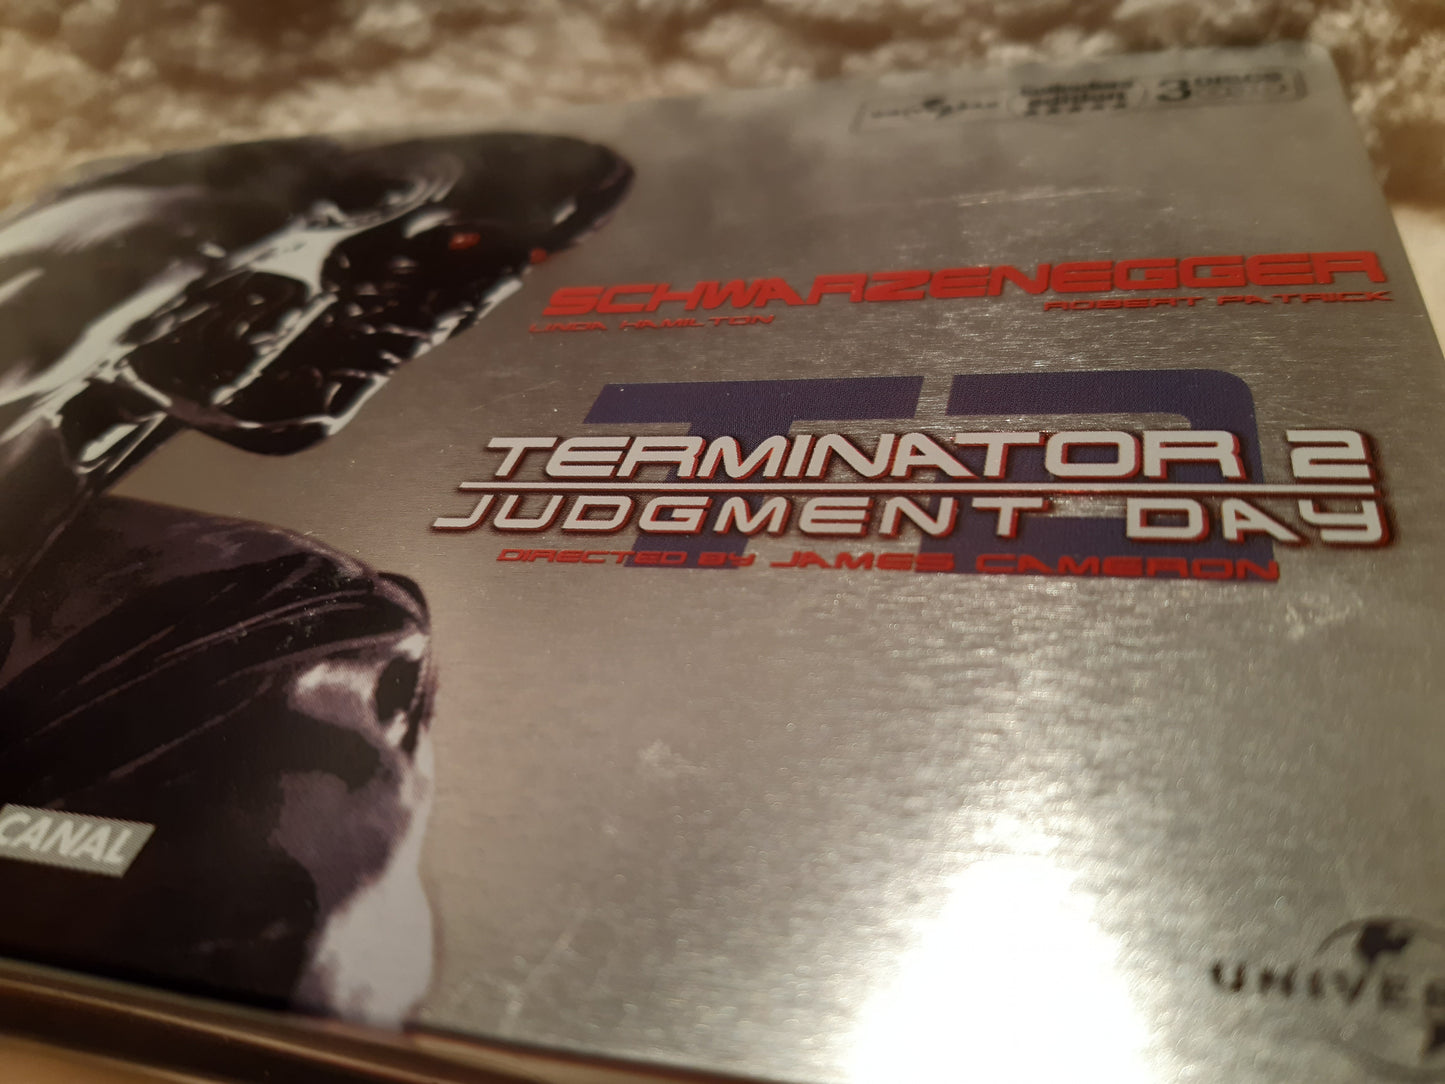 terminator 2 judgement day - 3 dvd